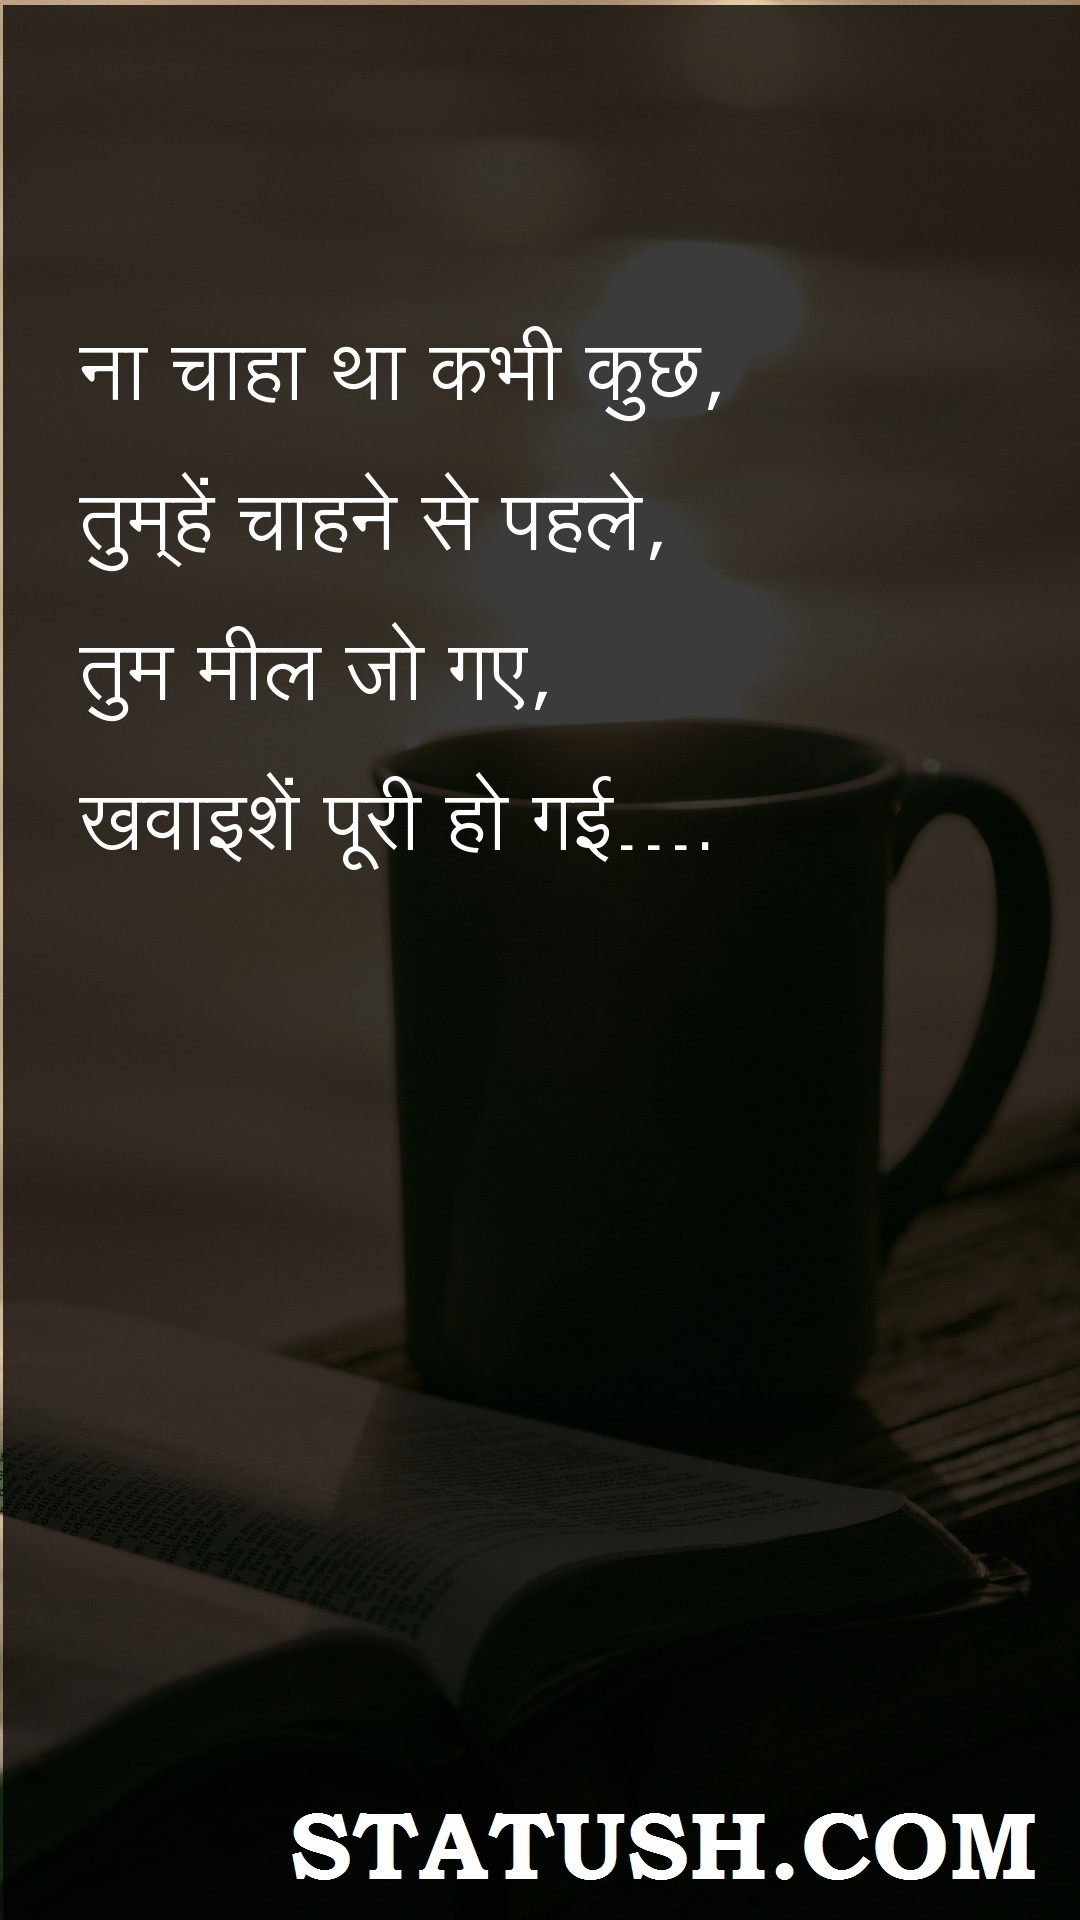 I never wanted anything - Hindi Quotes at statush.com